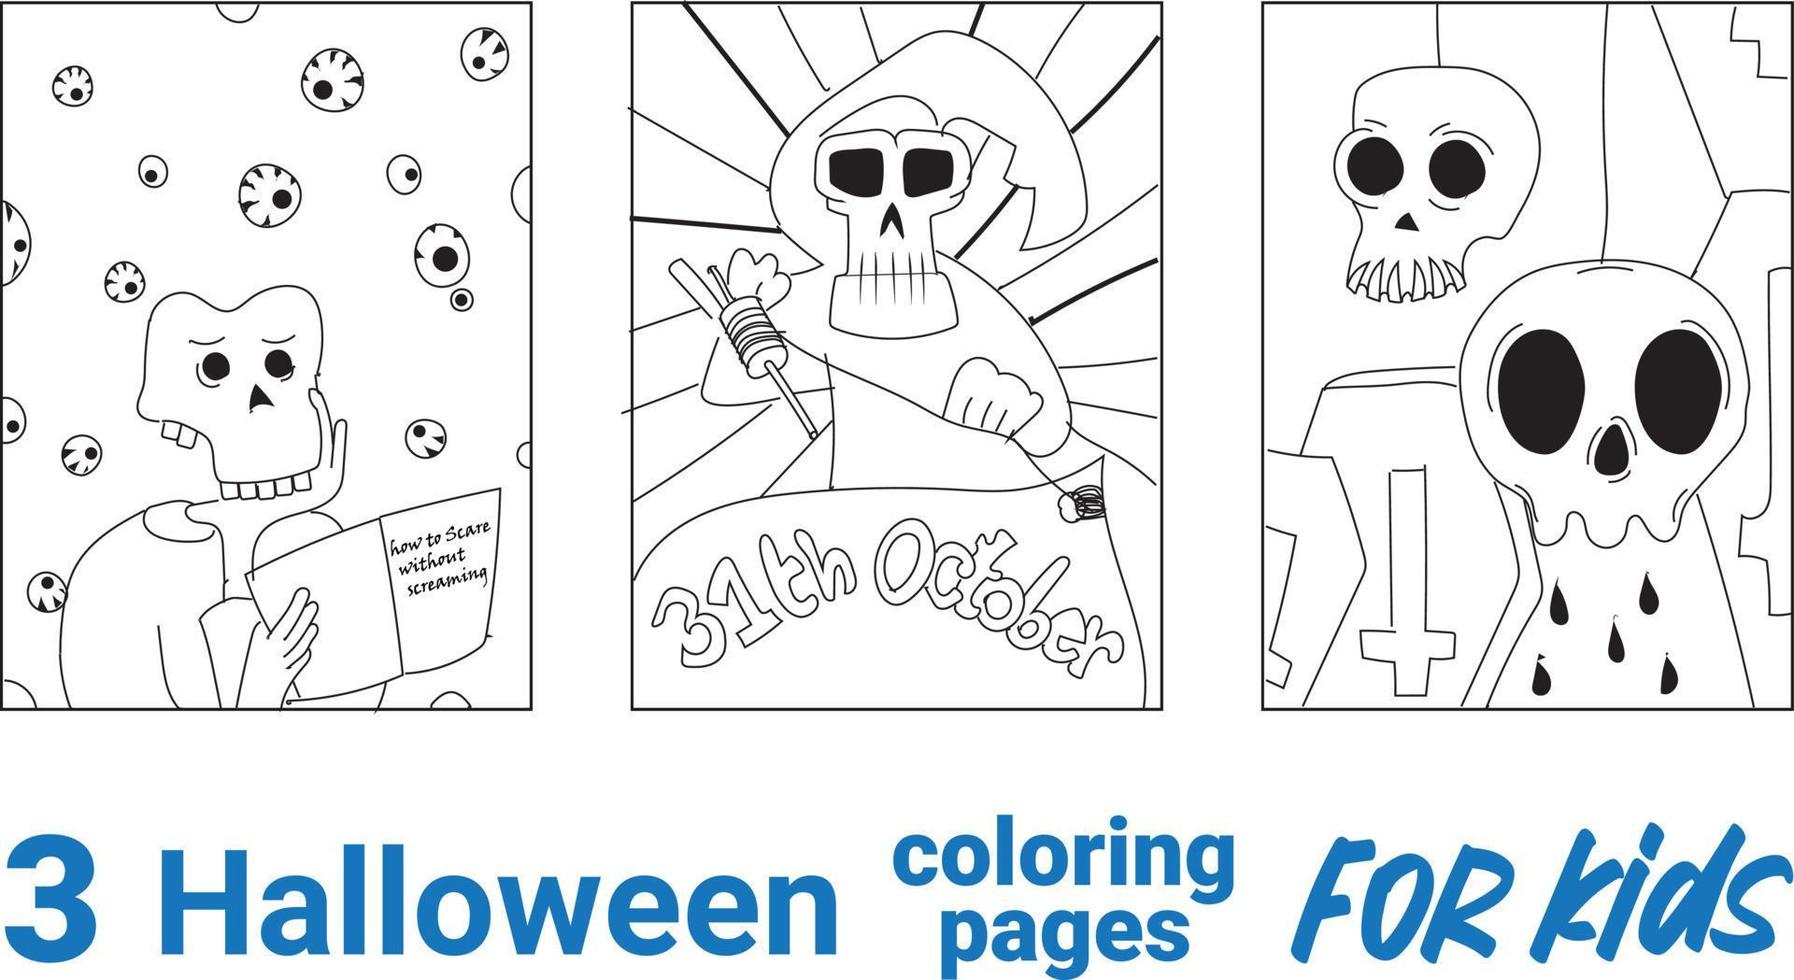 Descubra as melhores páginas para colorir Obito gratuitamente em